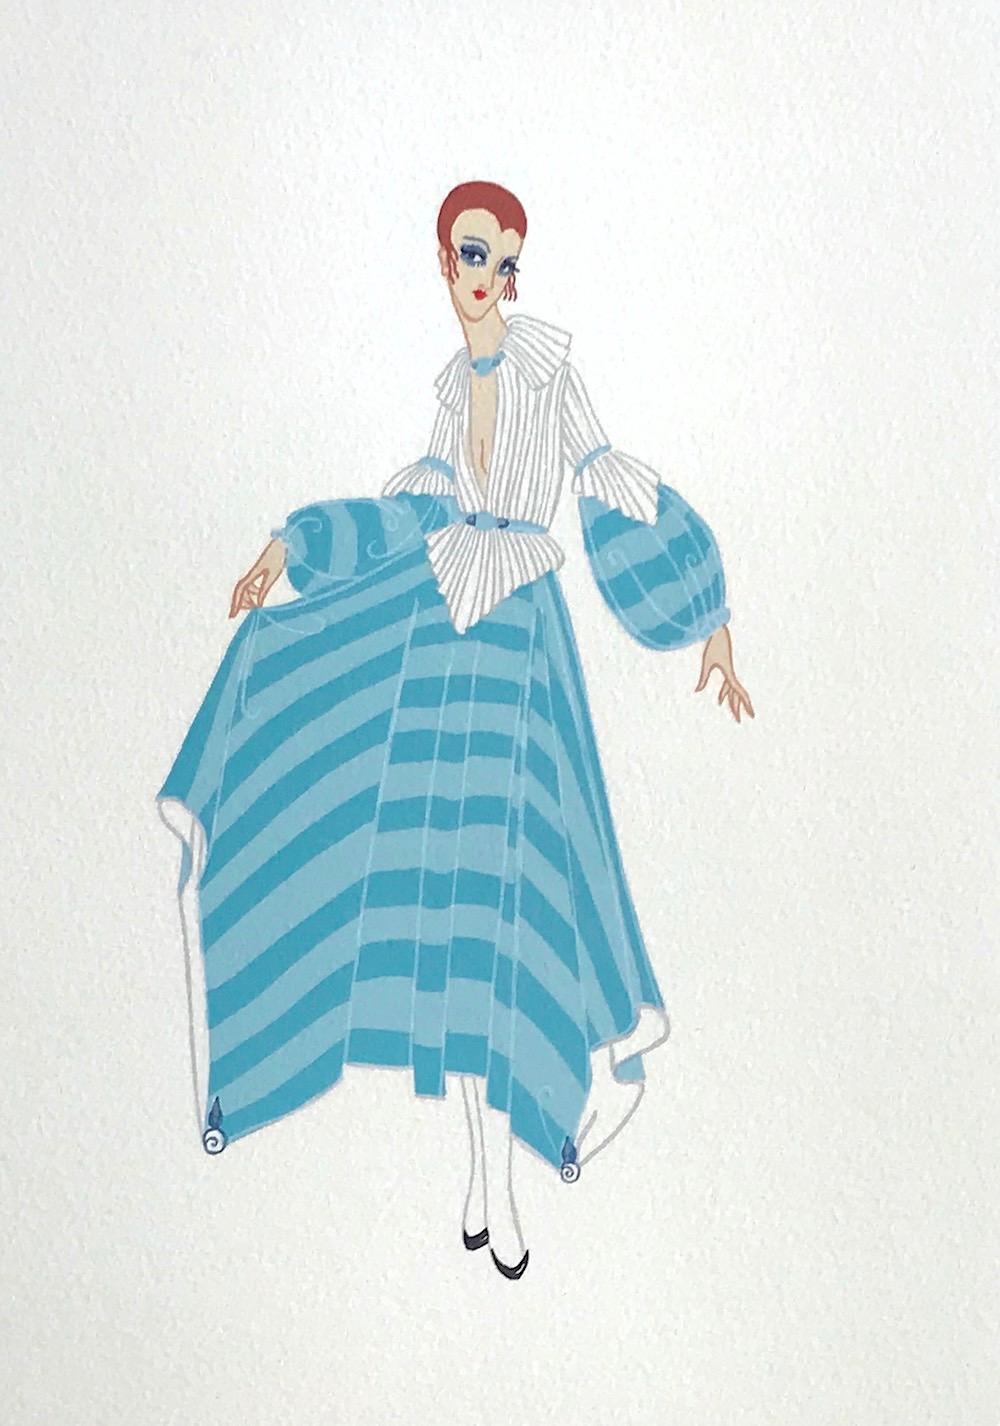 Lithographie de premier plan, illustration de mode des années 1920, portrait Art déco